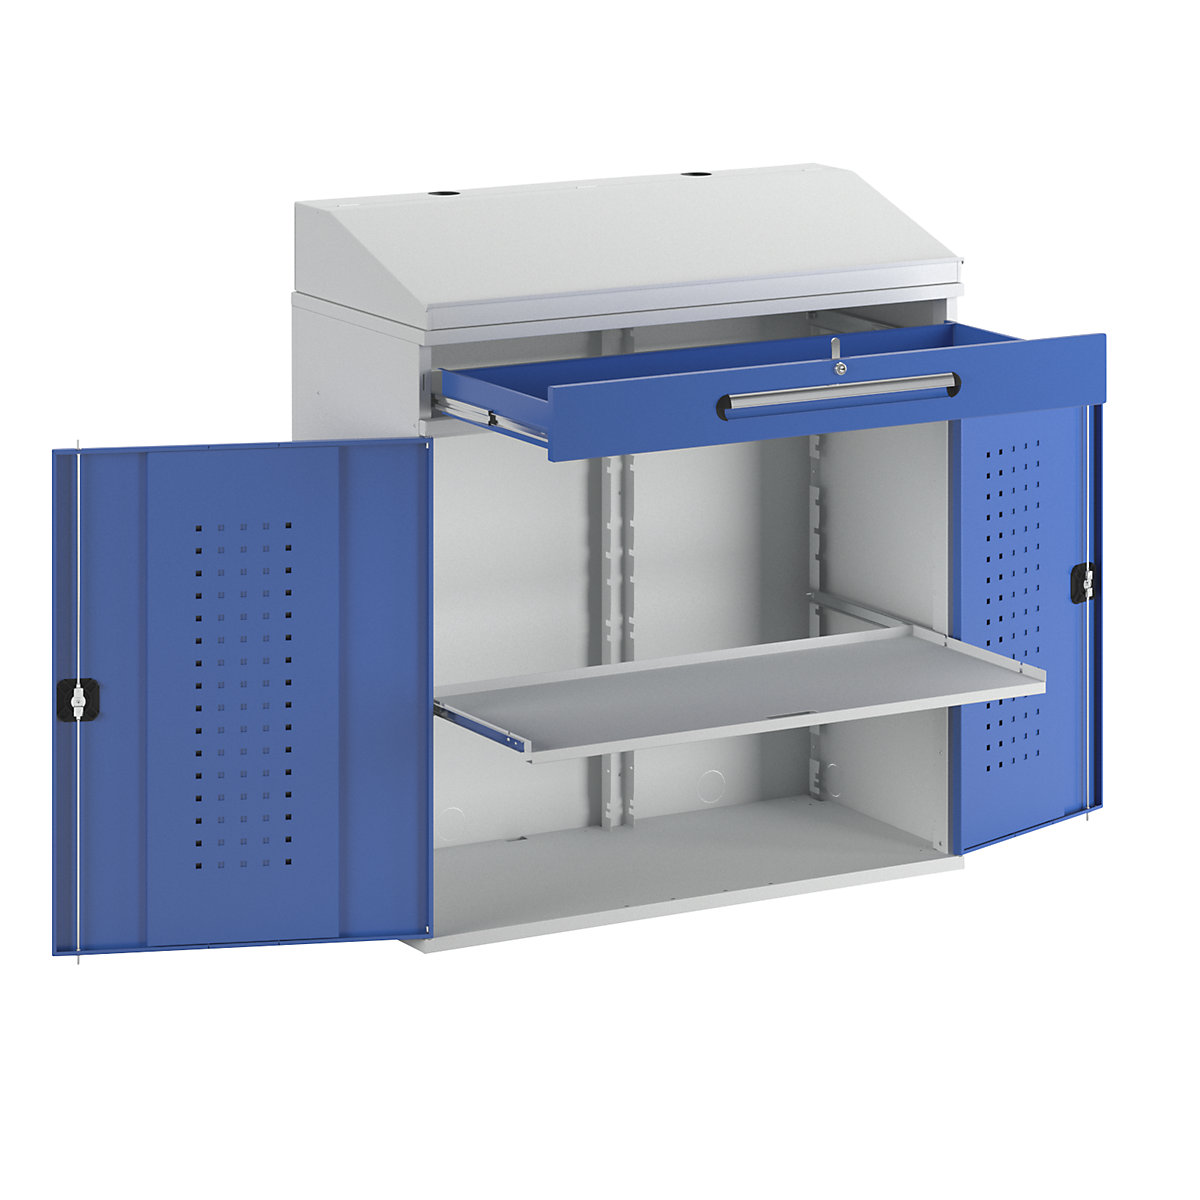 Scrivinpiedi per uso industriale – RAU, con 1 cassetto sopra l'armadio, larghezza 1100 mm, grigio chiaro / blu genziana-13